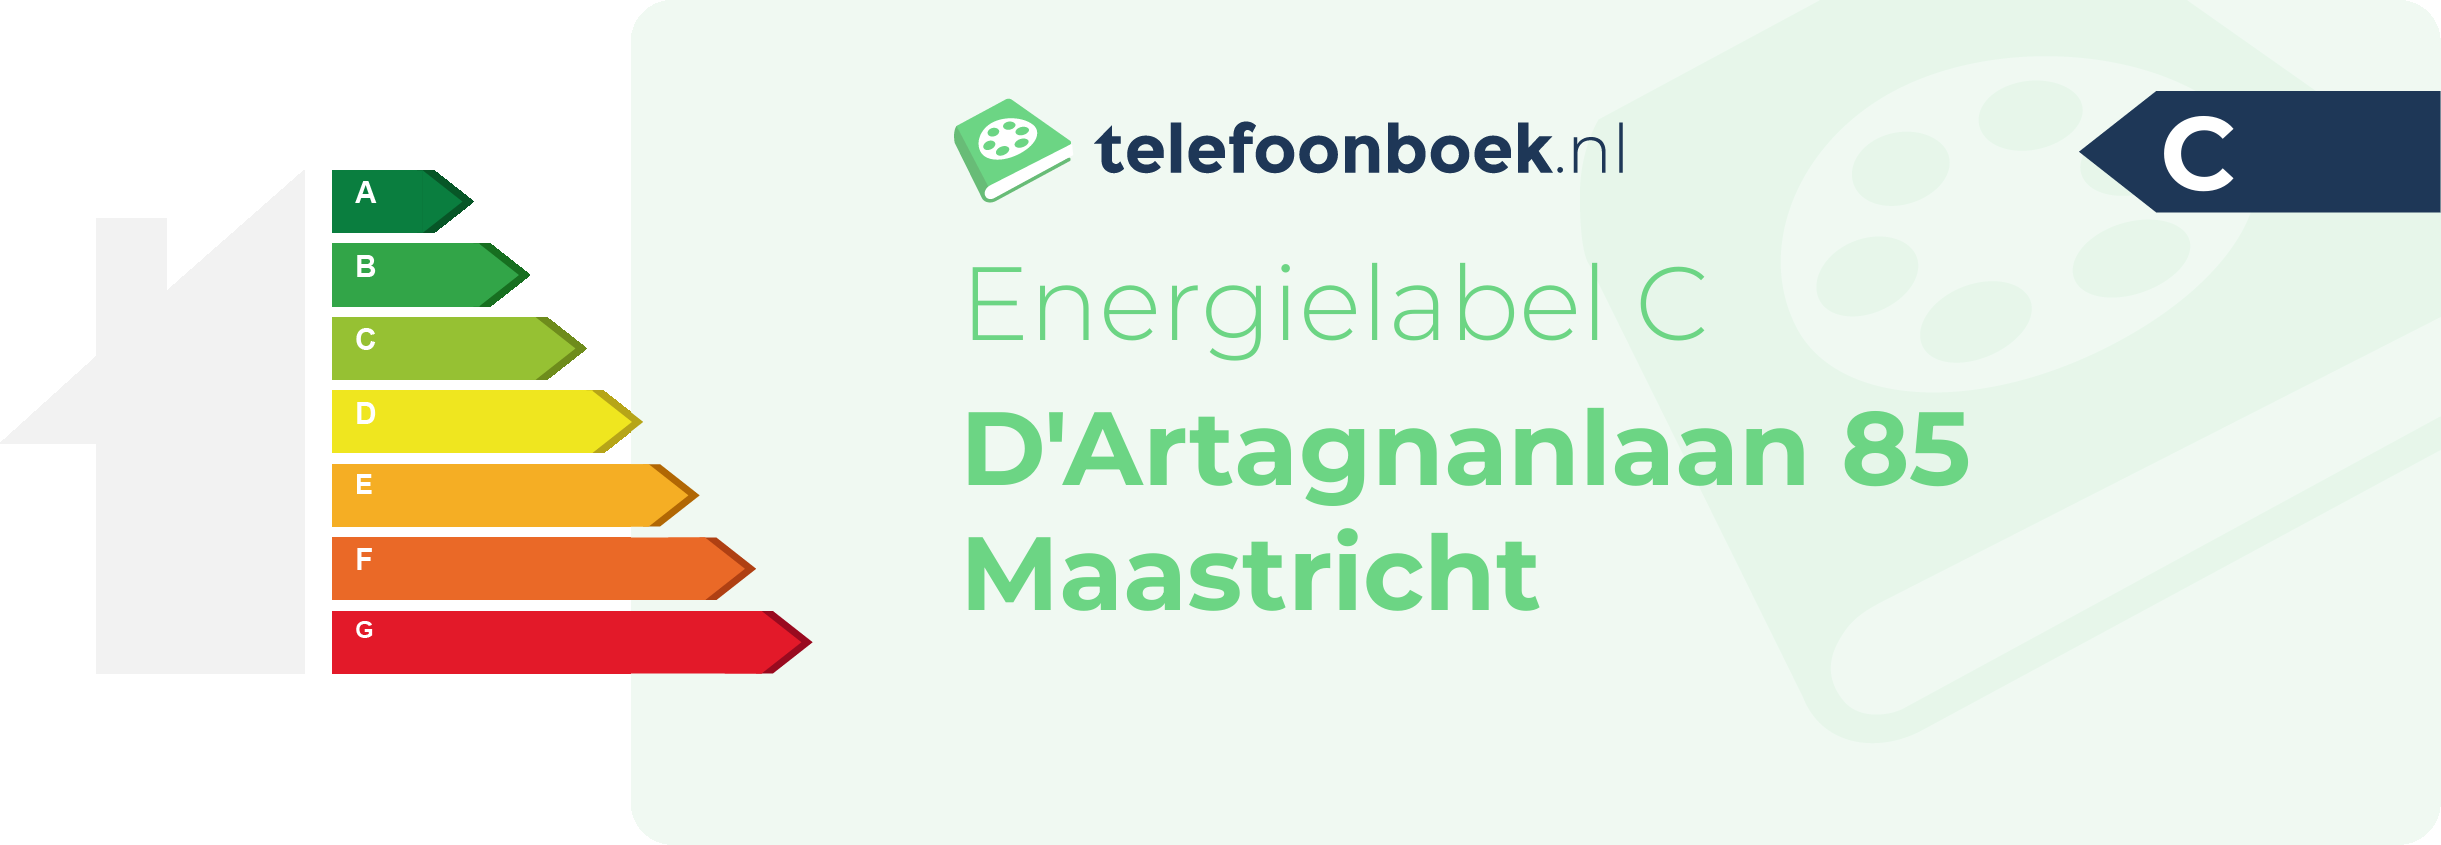 Energielabel D'Artagnanlaan 85 Maastricht